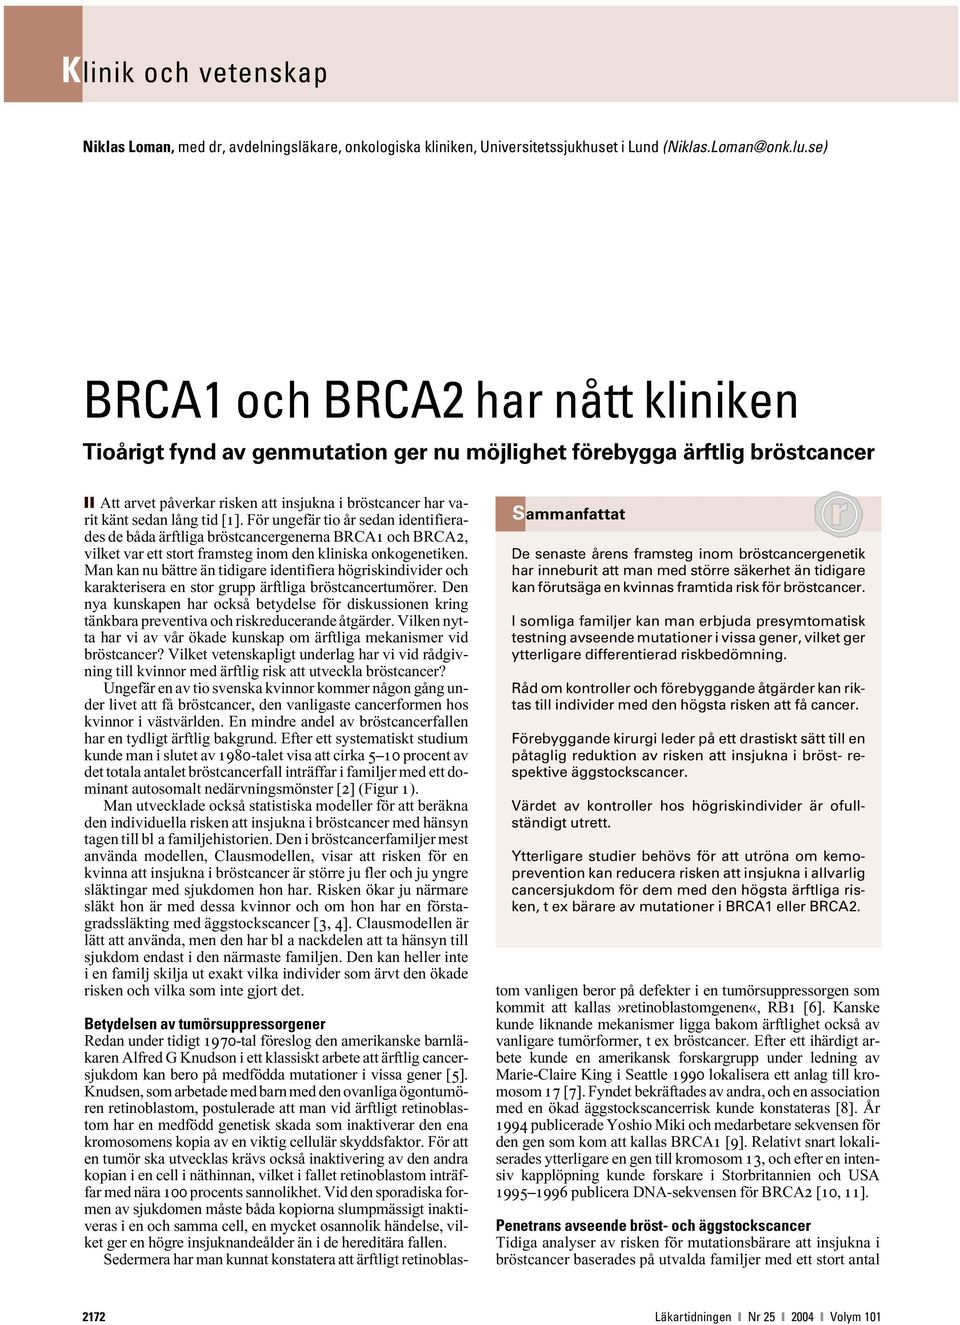 [1]. För ungefär tio år sedan identifierades de båda ärftliga bröstcancergenerna BRCA1 och BRCA2, vilket var ett stort framsteg inom den kliniska onkogenetiken.